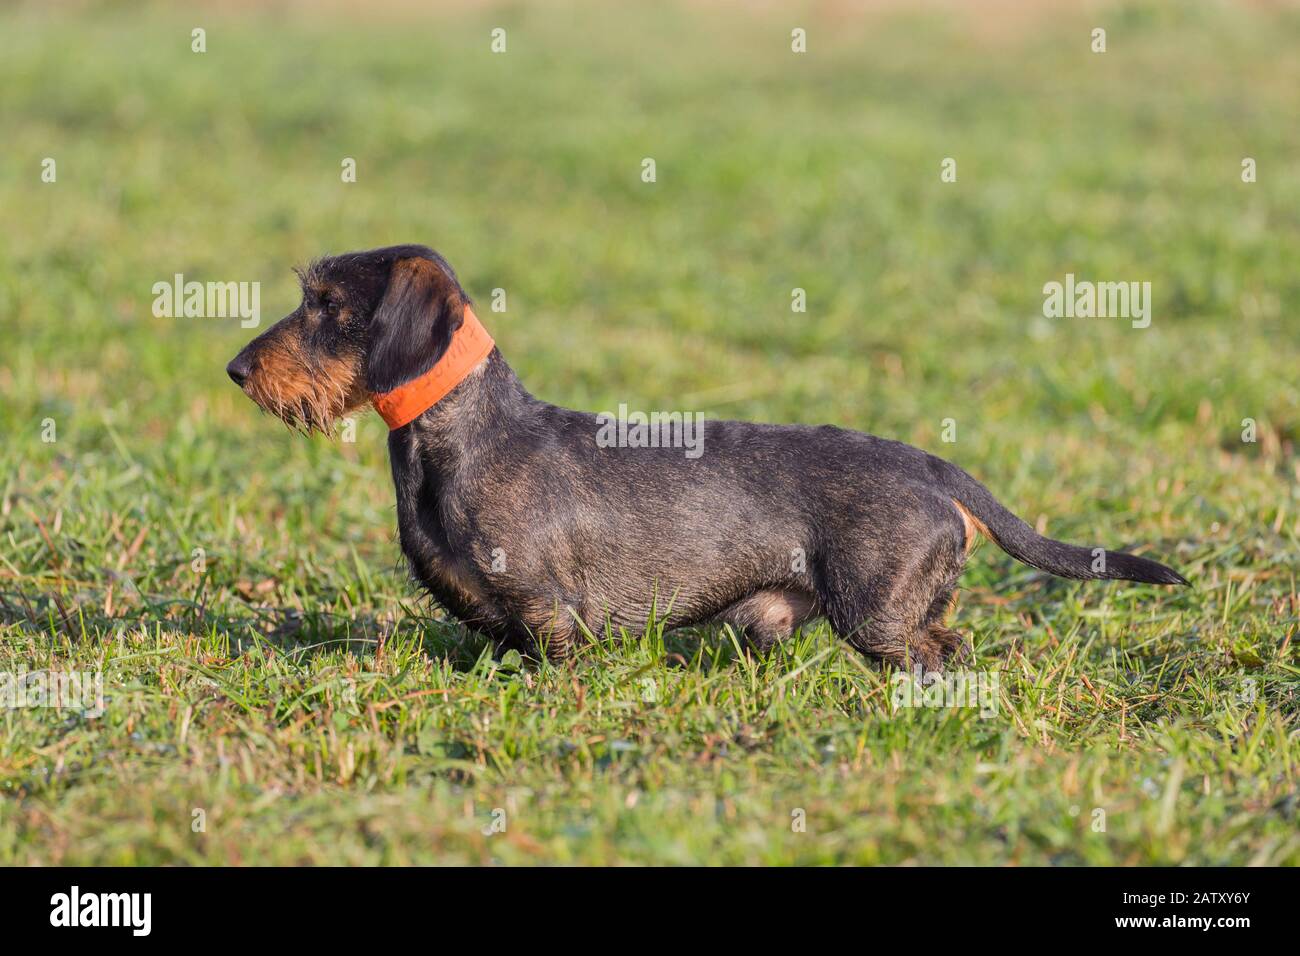 Drahthaarige Dachshund/wirthaarige Dachshund, kurzbeinige, langbärtige, hundartige Hunderasse brüten auf dem Rasen im Garten Stockfoto